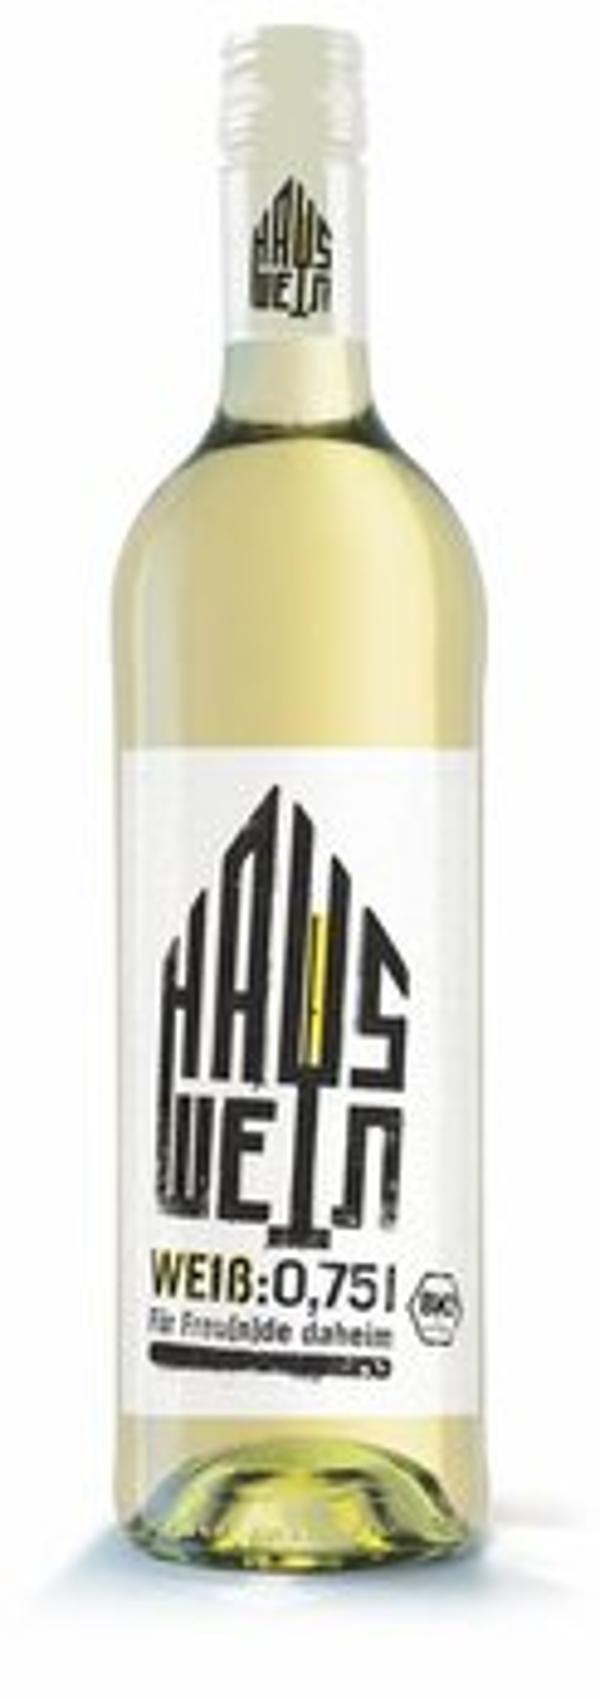 Produktfoto zu Hauswein weiß halbtrocken, 0,75 l